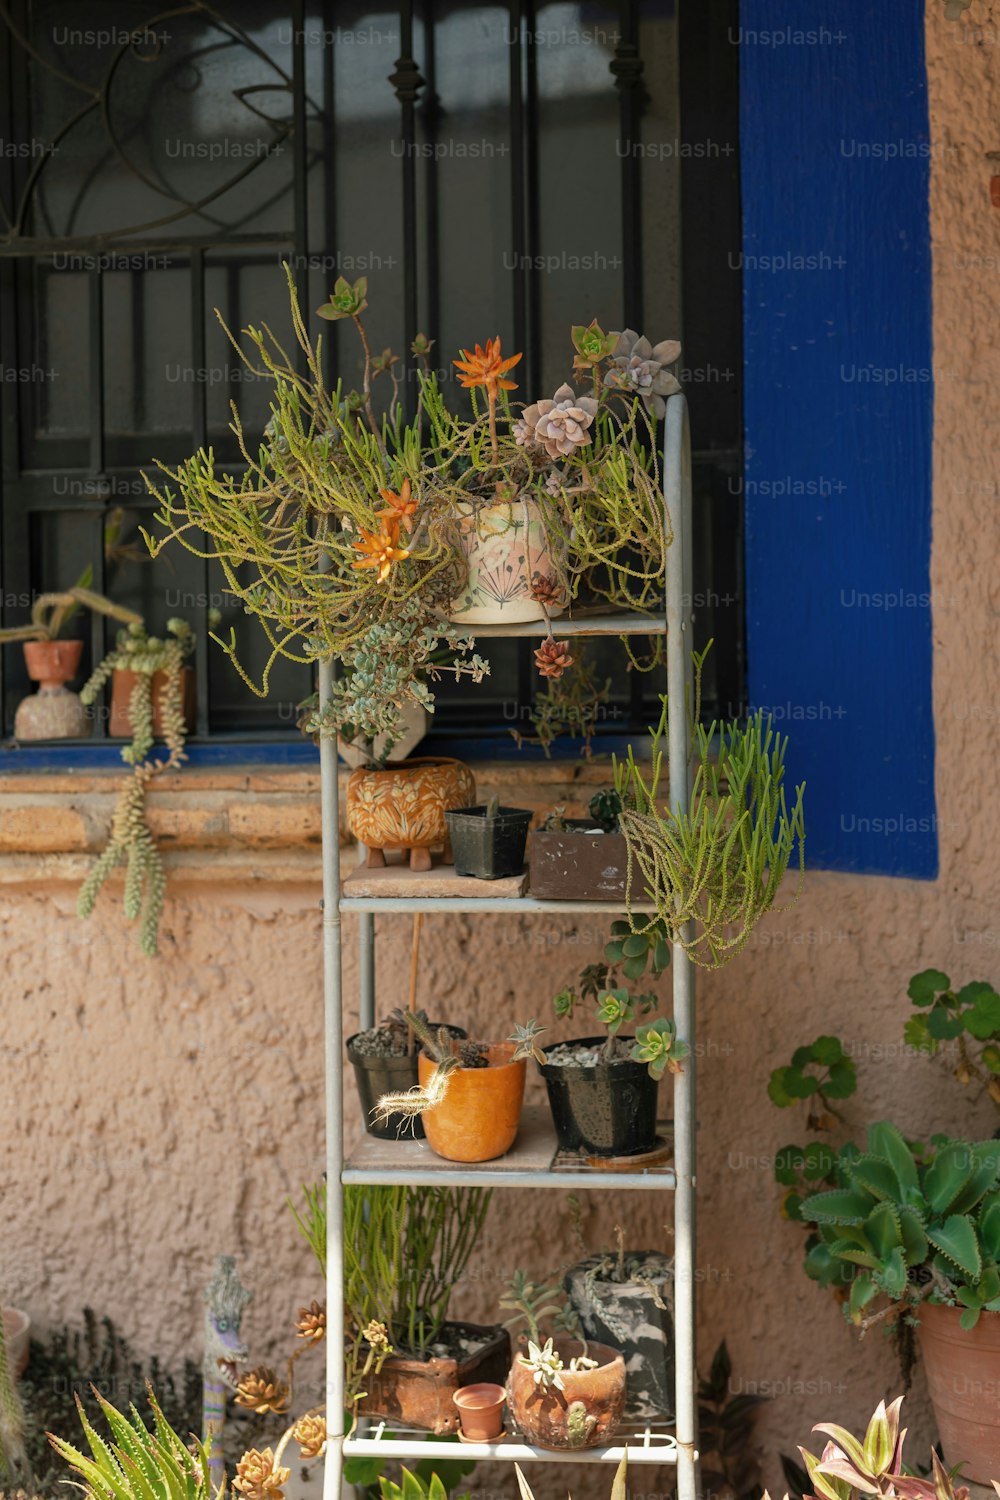 Un estante de metal lleno de plantas en macetas junto a una ventana